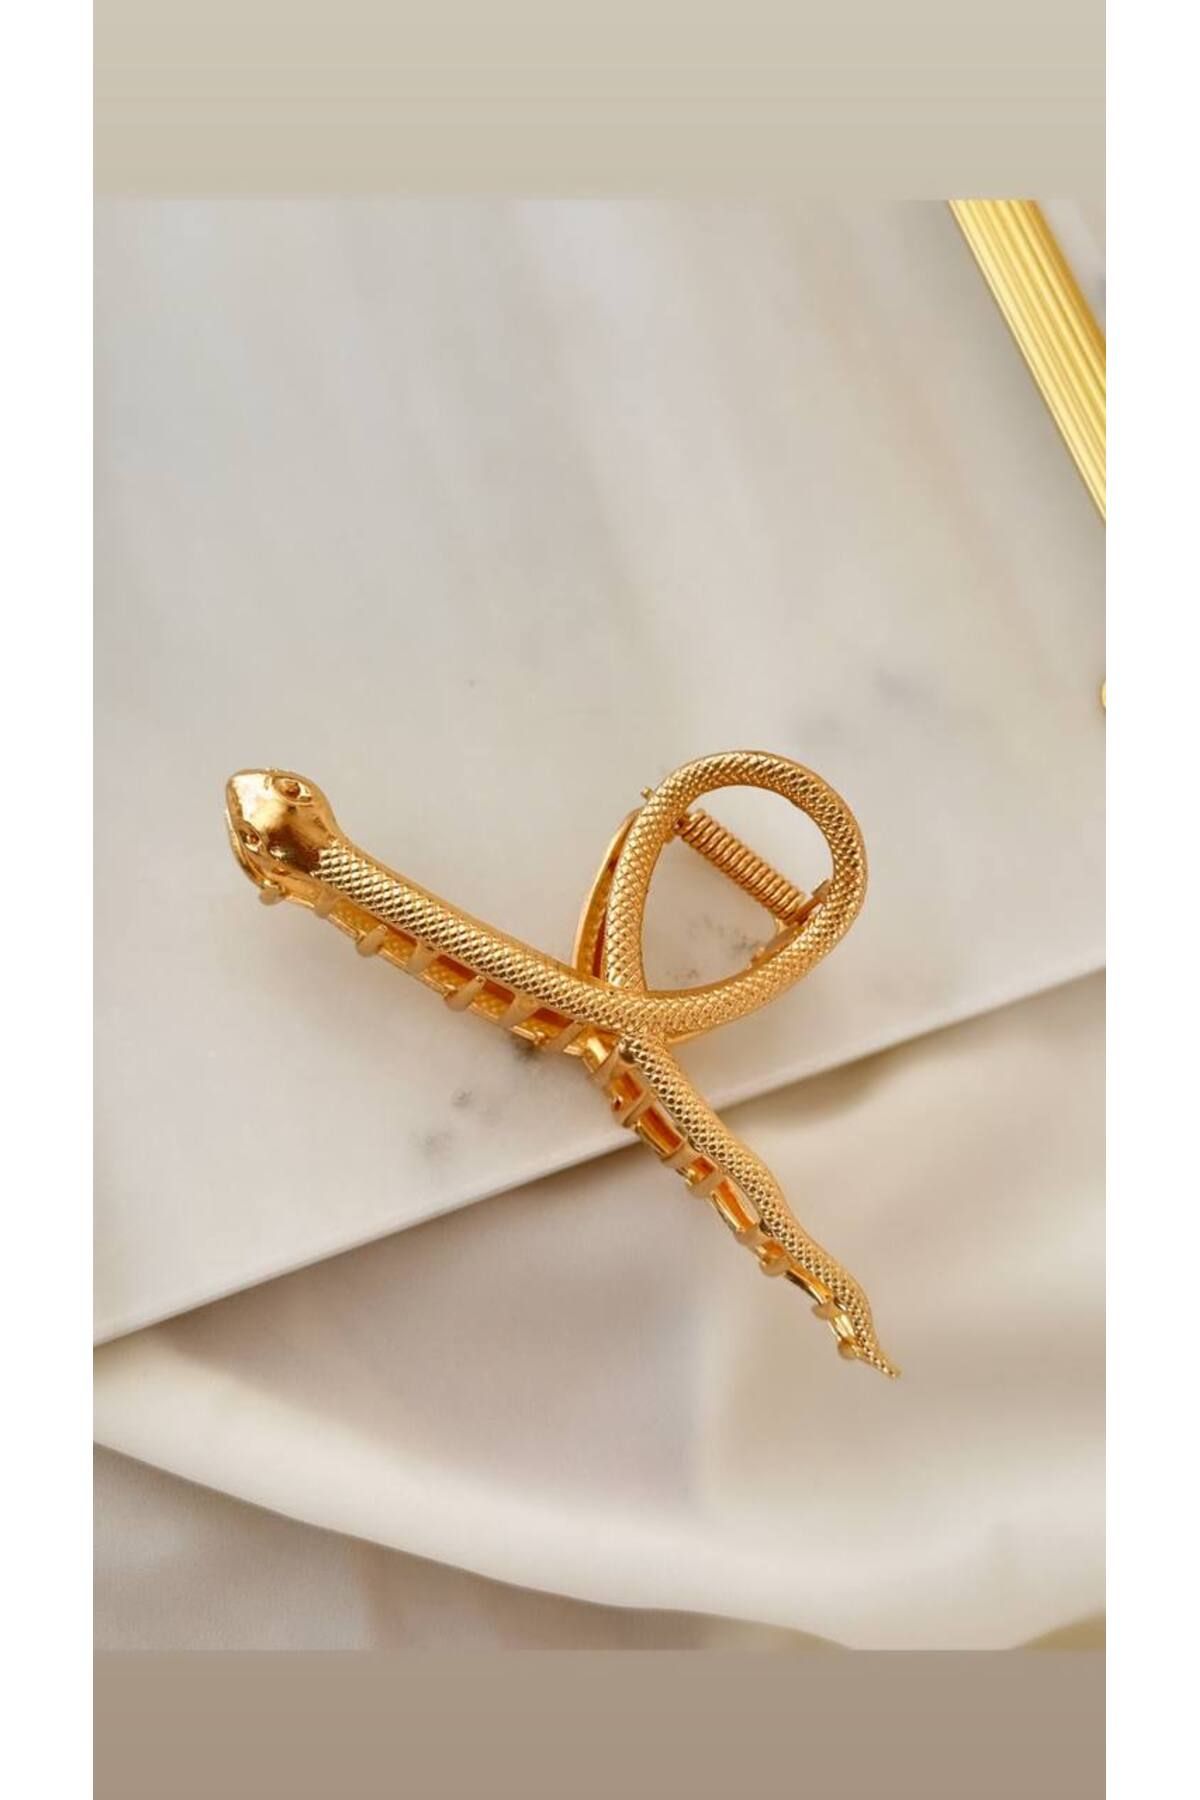 Esmeray Aksesuar Gold Renk Yılan Tasarım Metal Mandal Toka Uzunluk 11 cm.